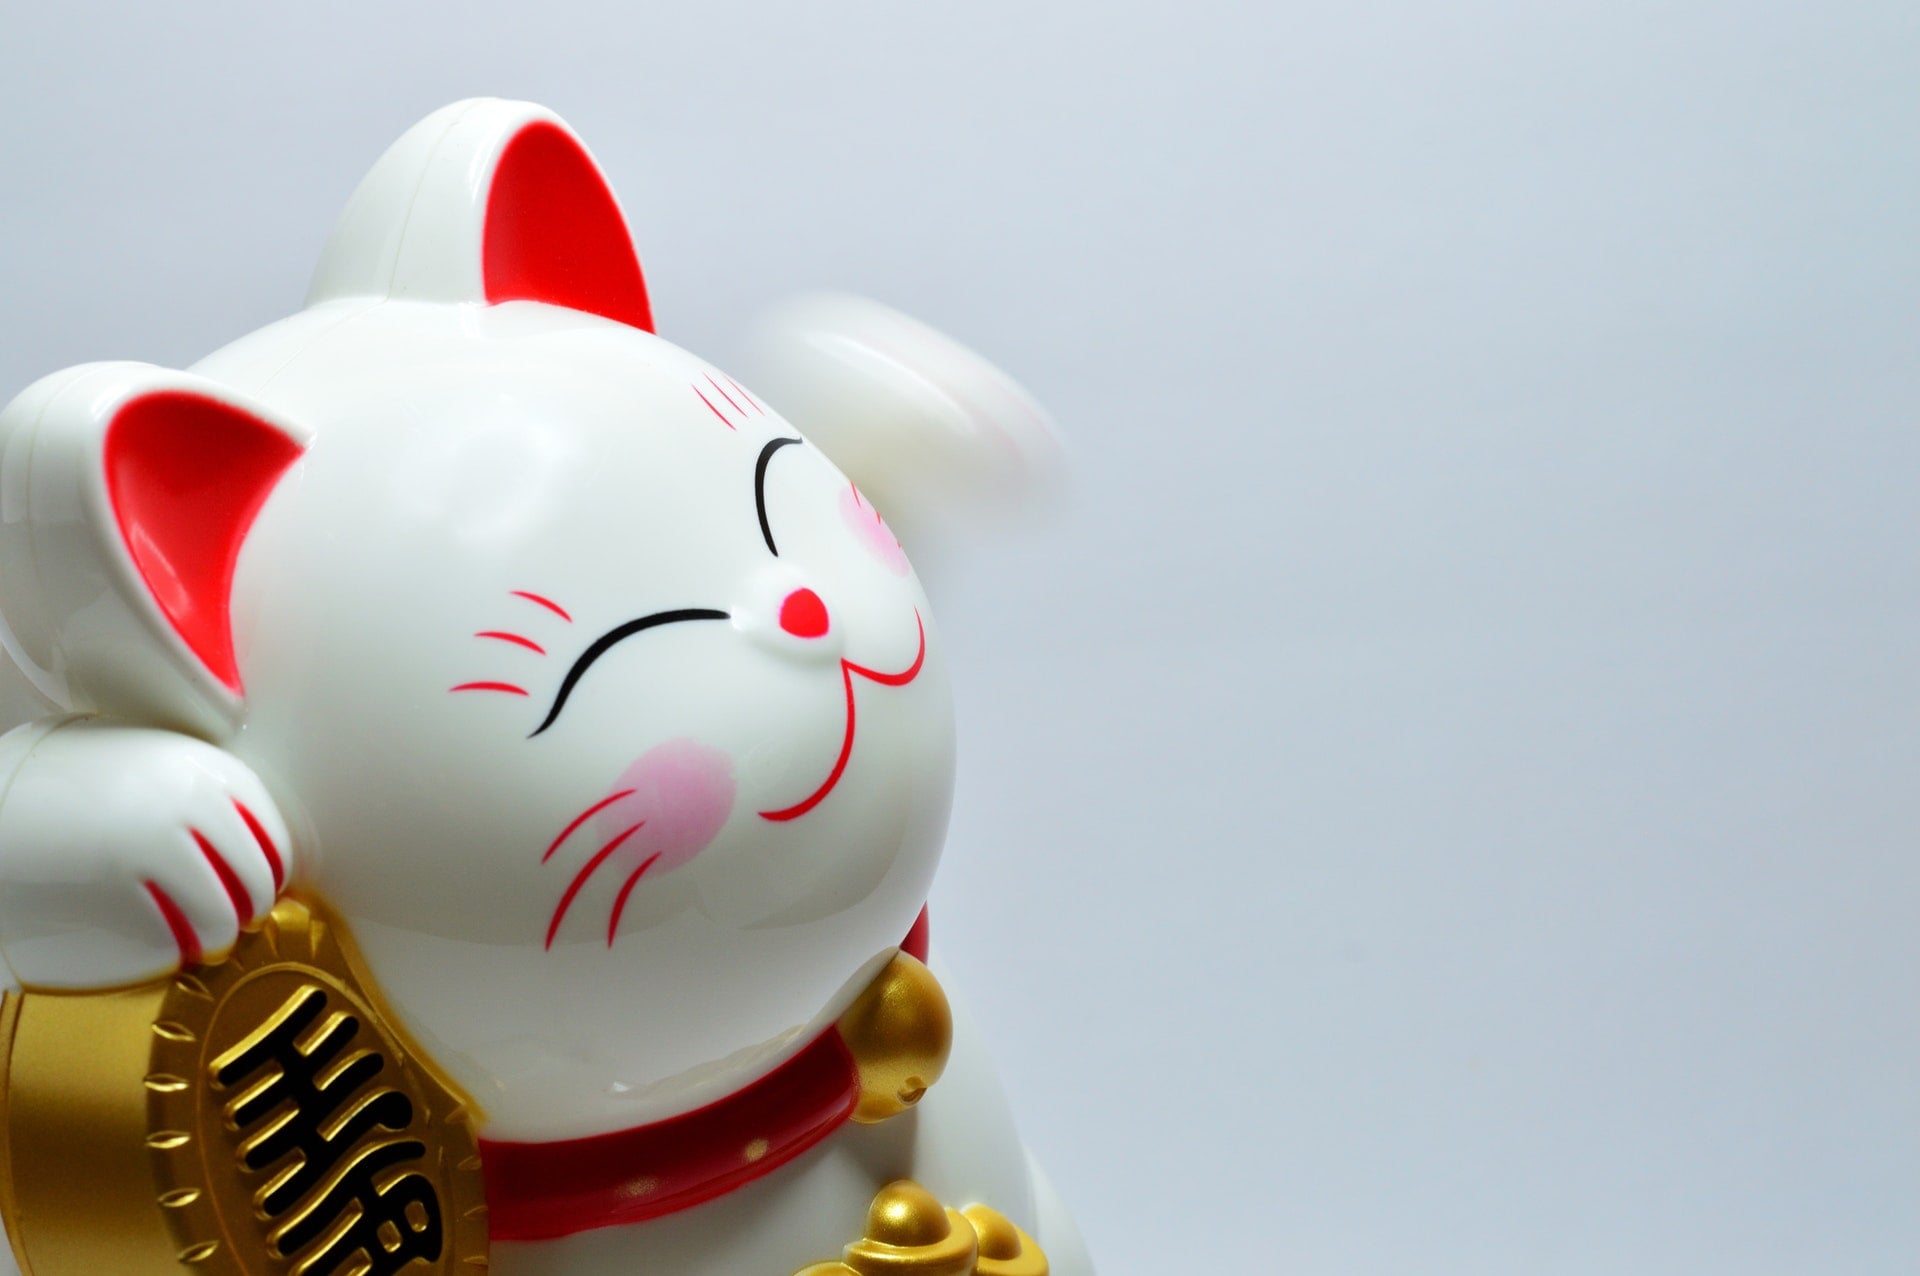 民國 108 年 9、10 月統一發票號碼中獎號碼、獎金兌獎說明 2019 japanese lucky coin cat